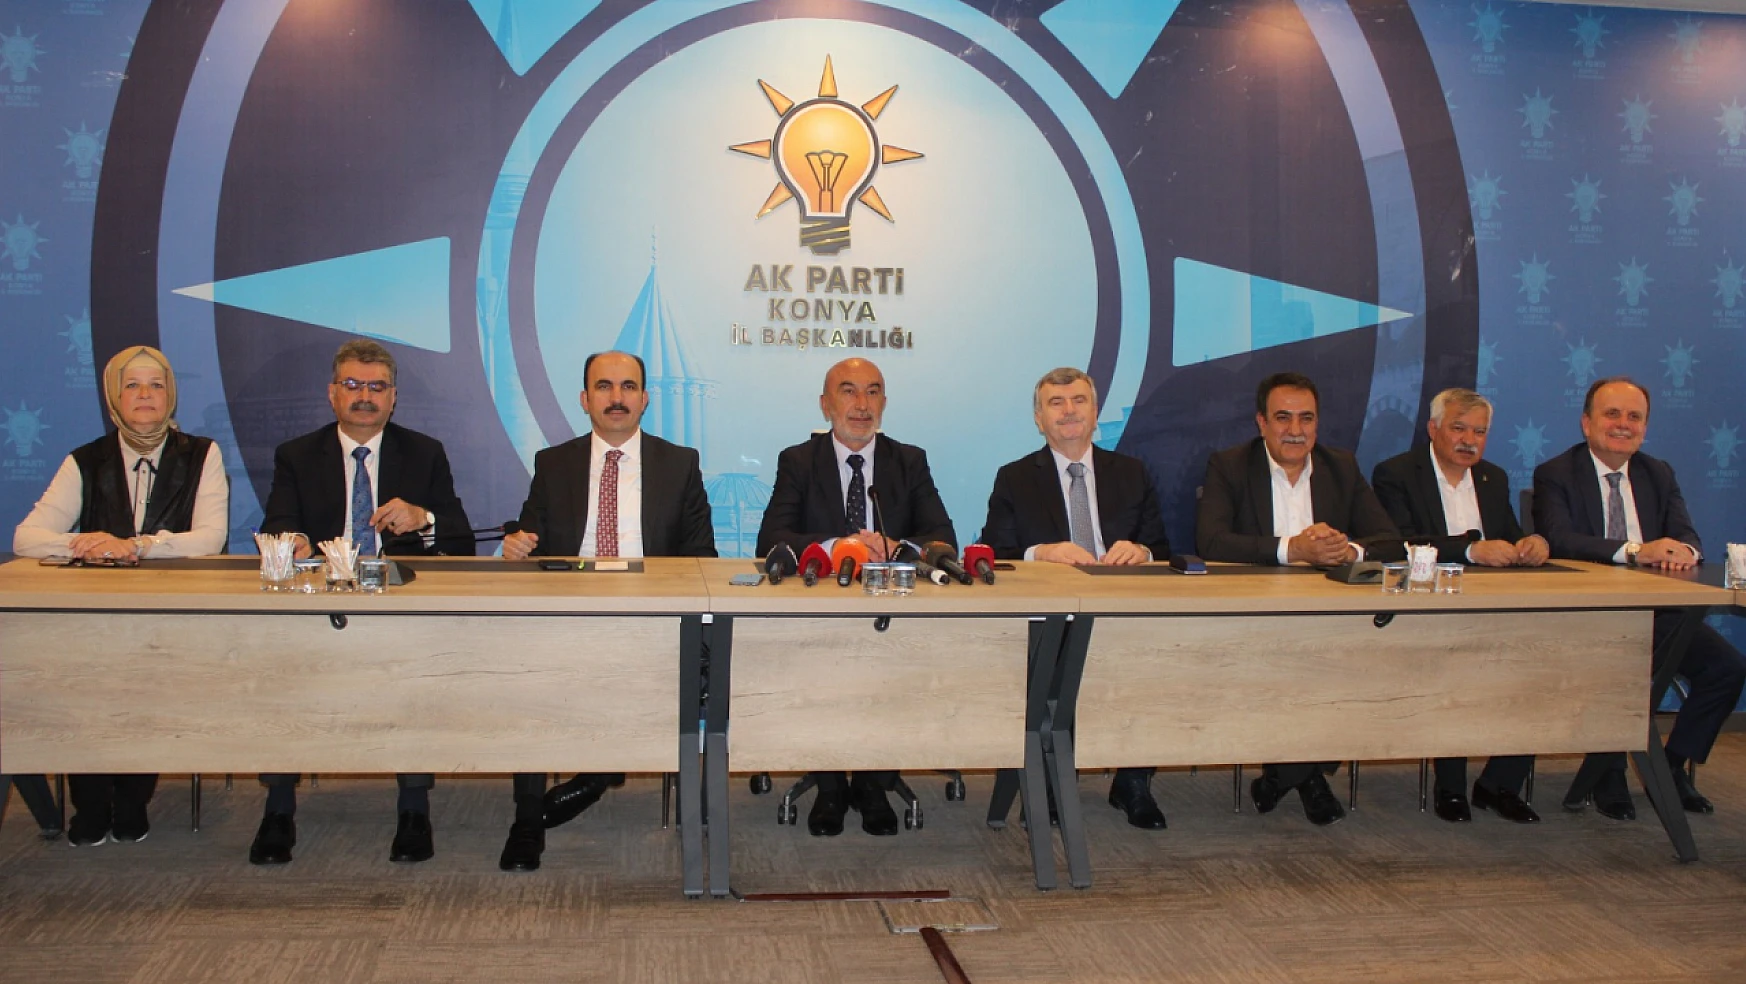 Konya'da AK Parti İl Başkanlığı'nda Basın Toplantısı gerçekleştirildi